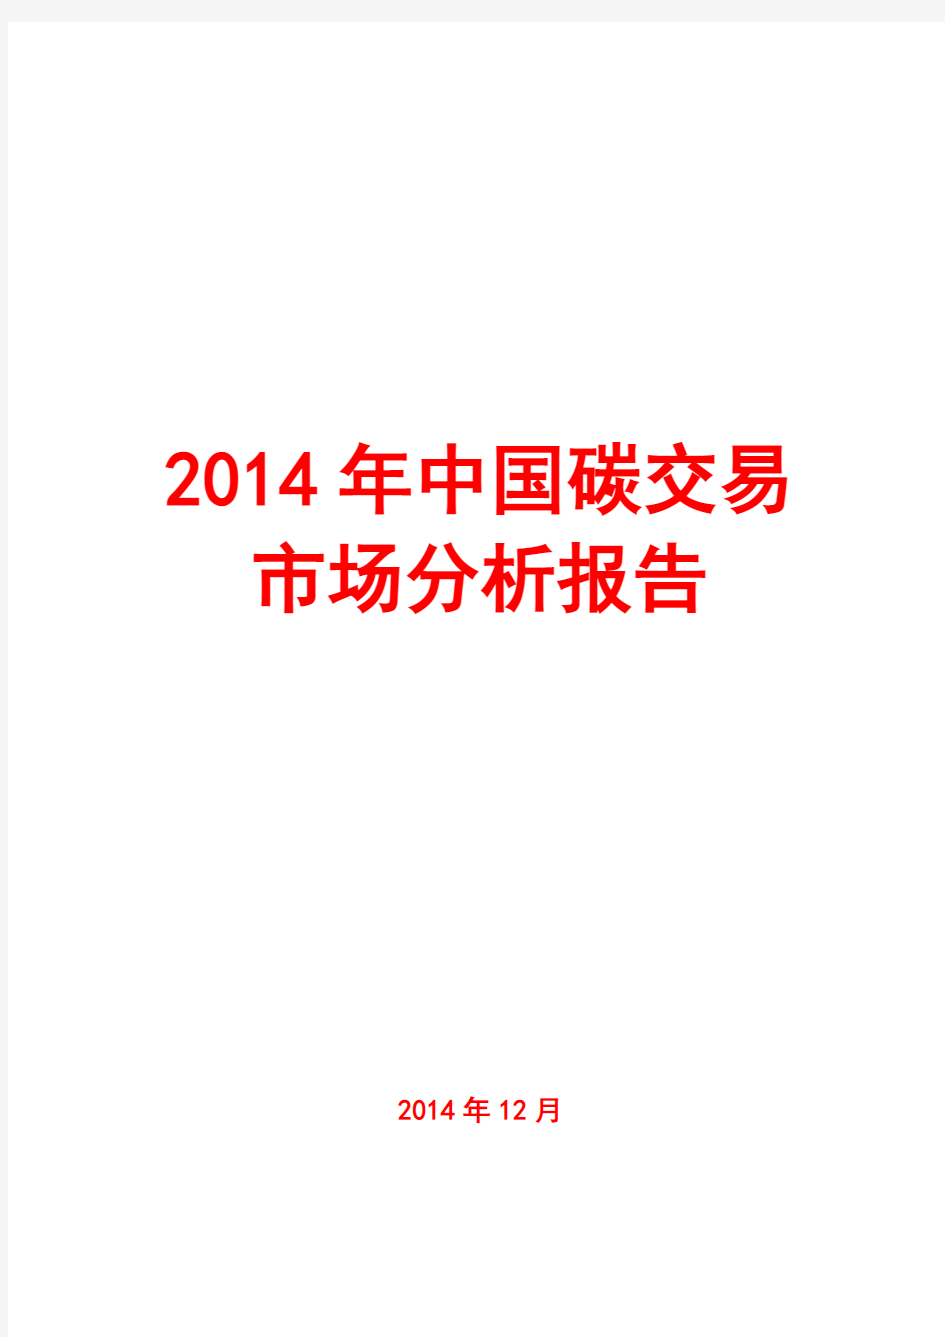 2014年中国碳交易市场分析报告